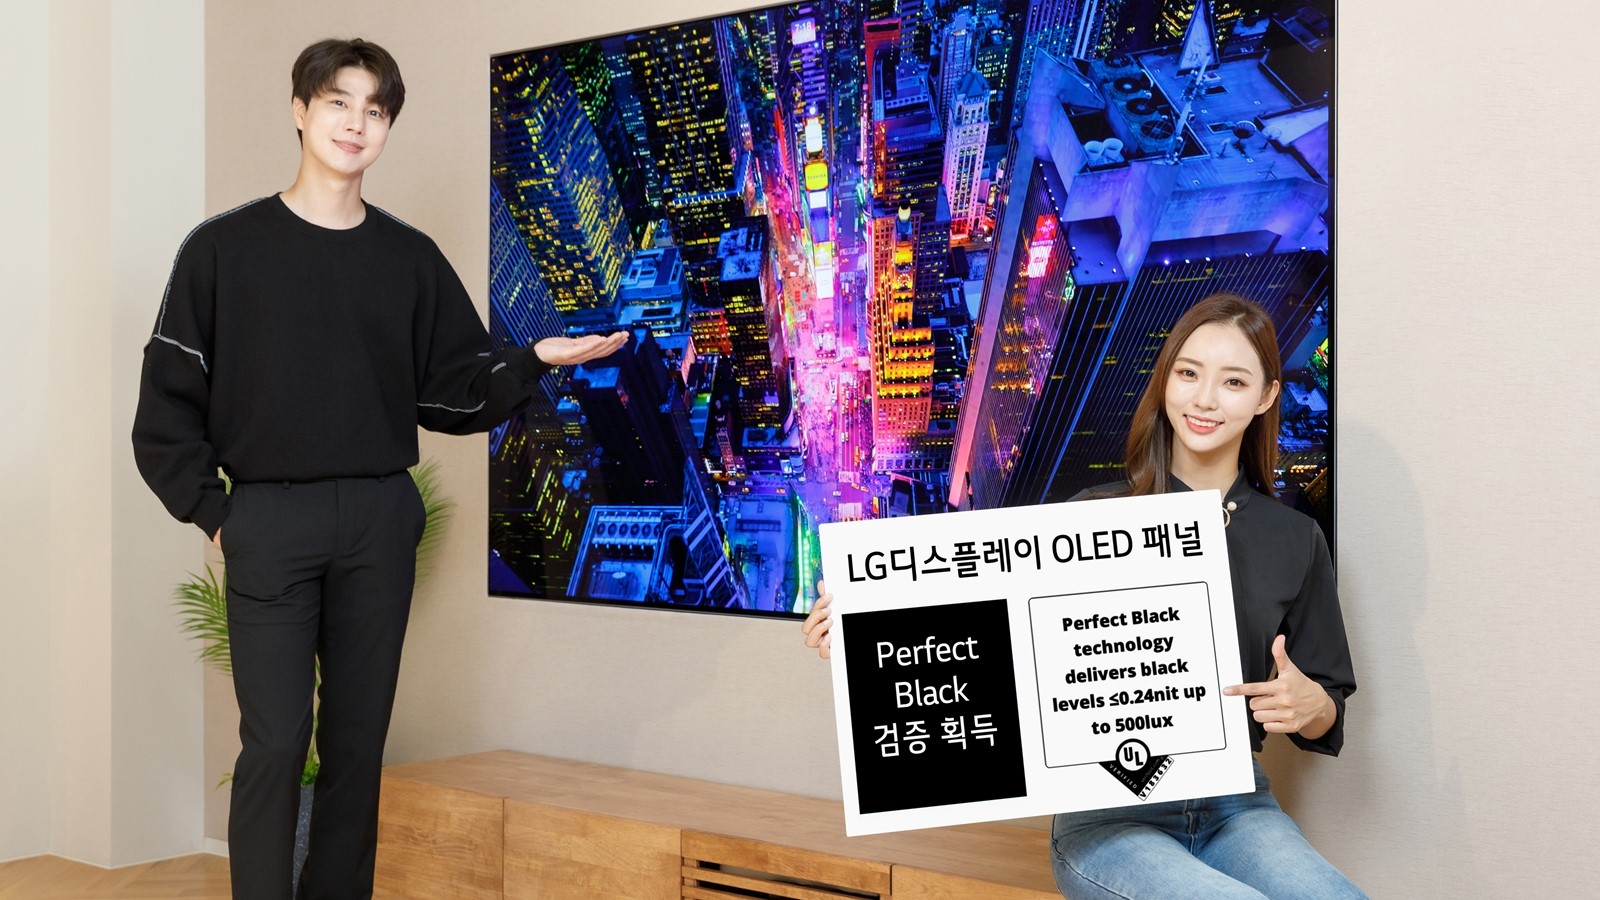 OLED-телевизоры LG проходят проверку «Perfect Black» — подтверждая то, что я уже знал